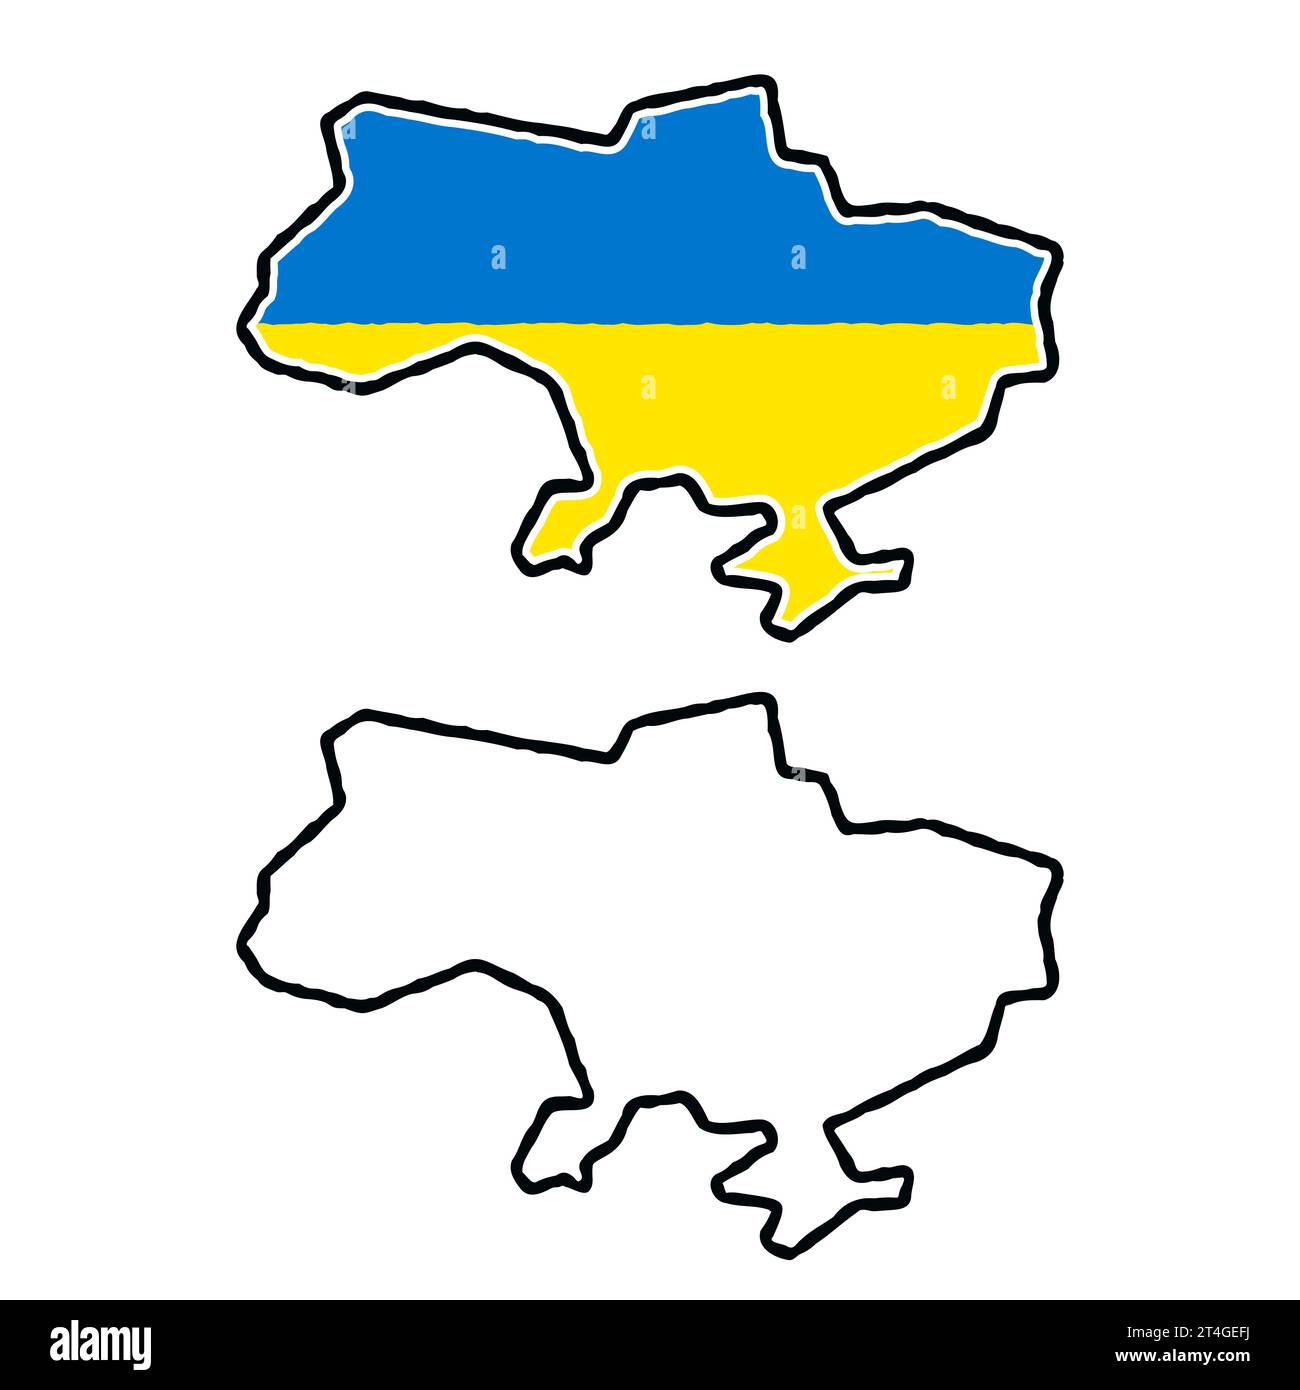 Mappa cartoon disegnata a mano dell'Ucraina. Disegno a linee in bianco e nero e colori della bandiera Ucraina. Illustrazione della clip art vettoriale. Illustrazione Vettoriale